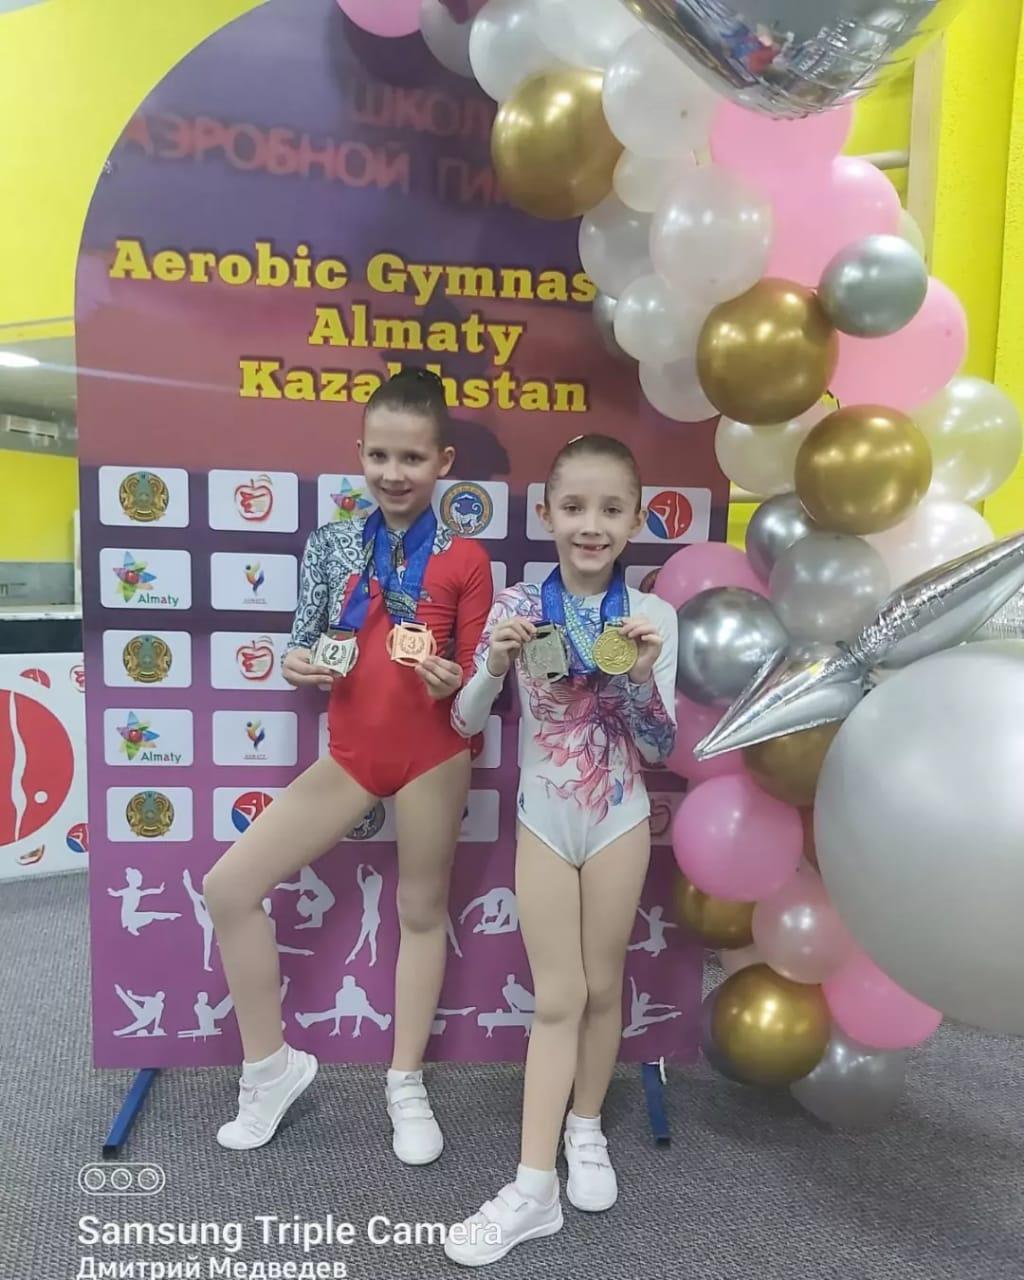 16 апрель күні Аэробтық гимнастика бойынша Алматы қаласында  чемпионат өткізілді. Мектебіміздің 1 "б" сынып оқушысы Медведева Алиса 6-8 жас аралығында